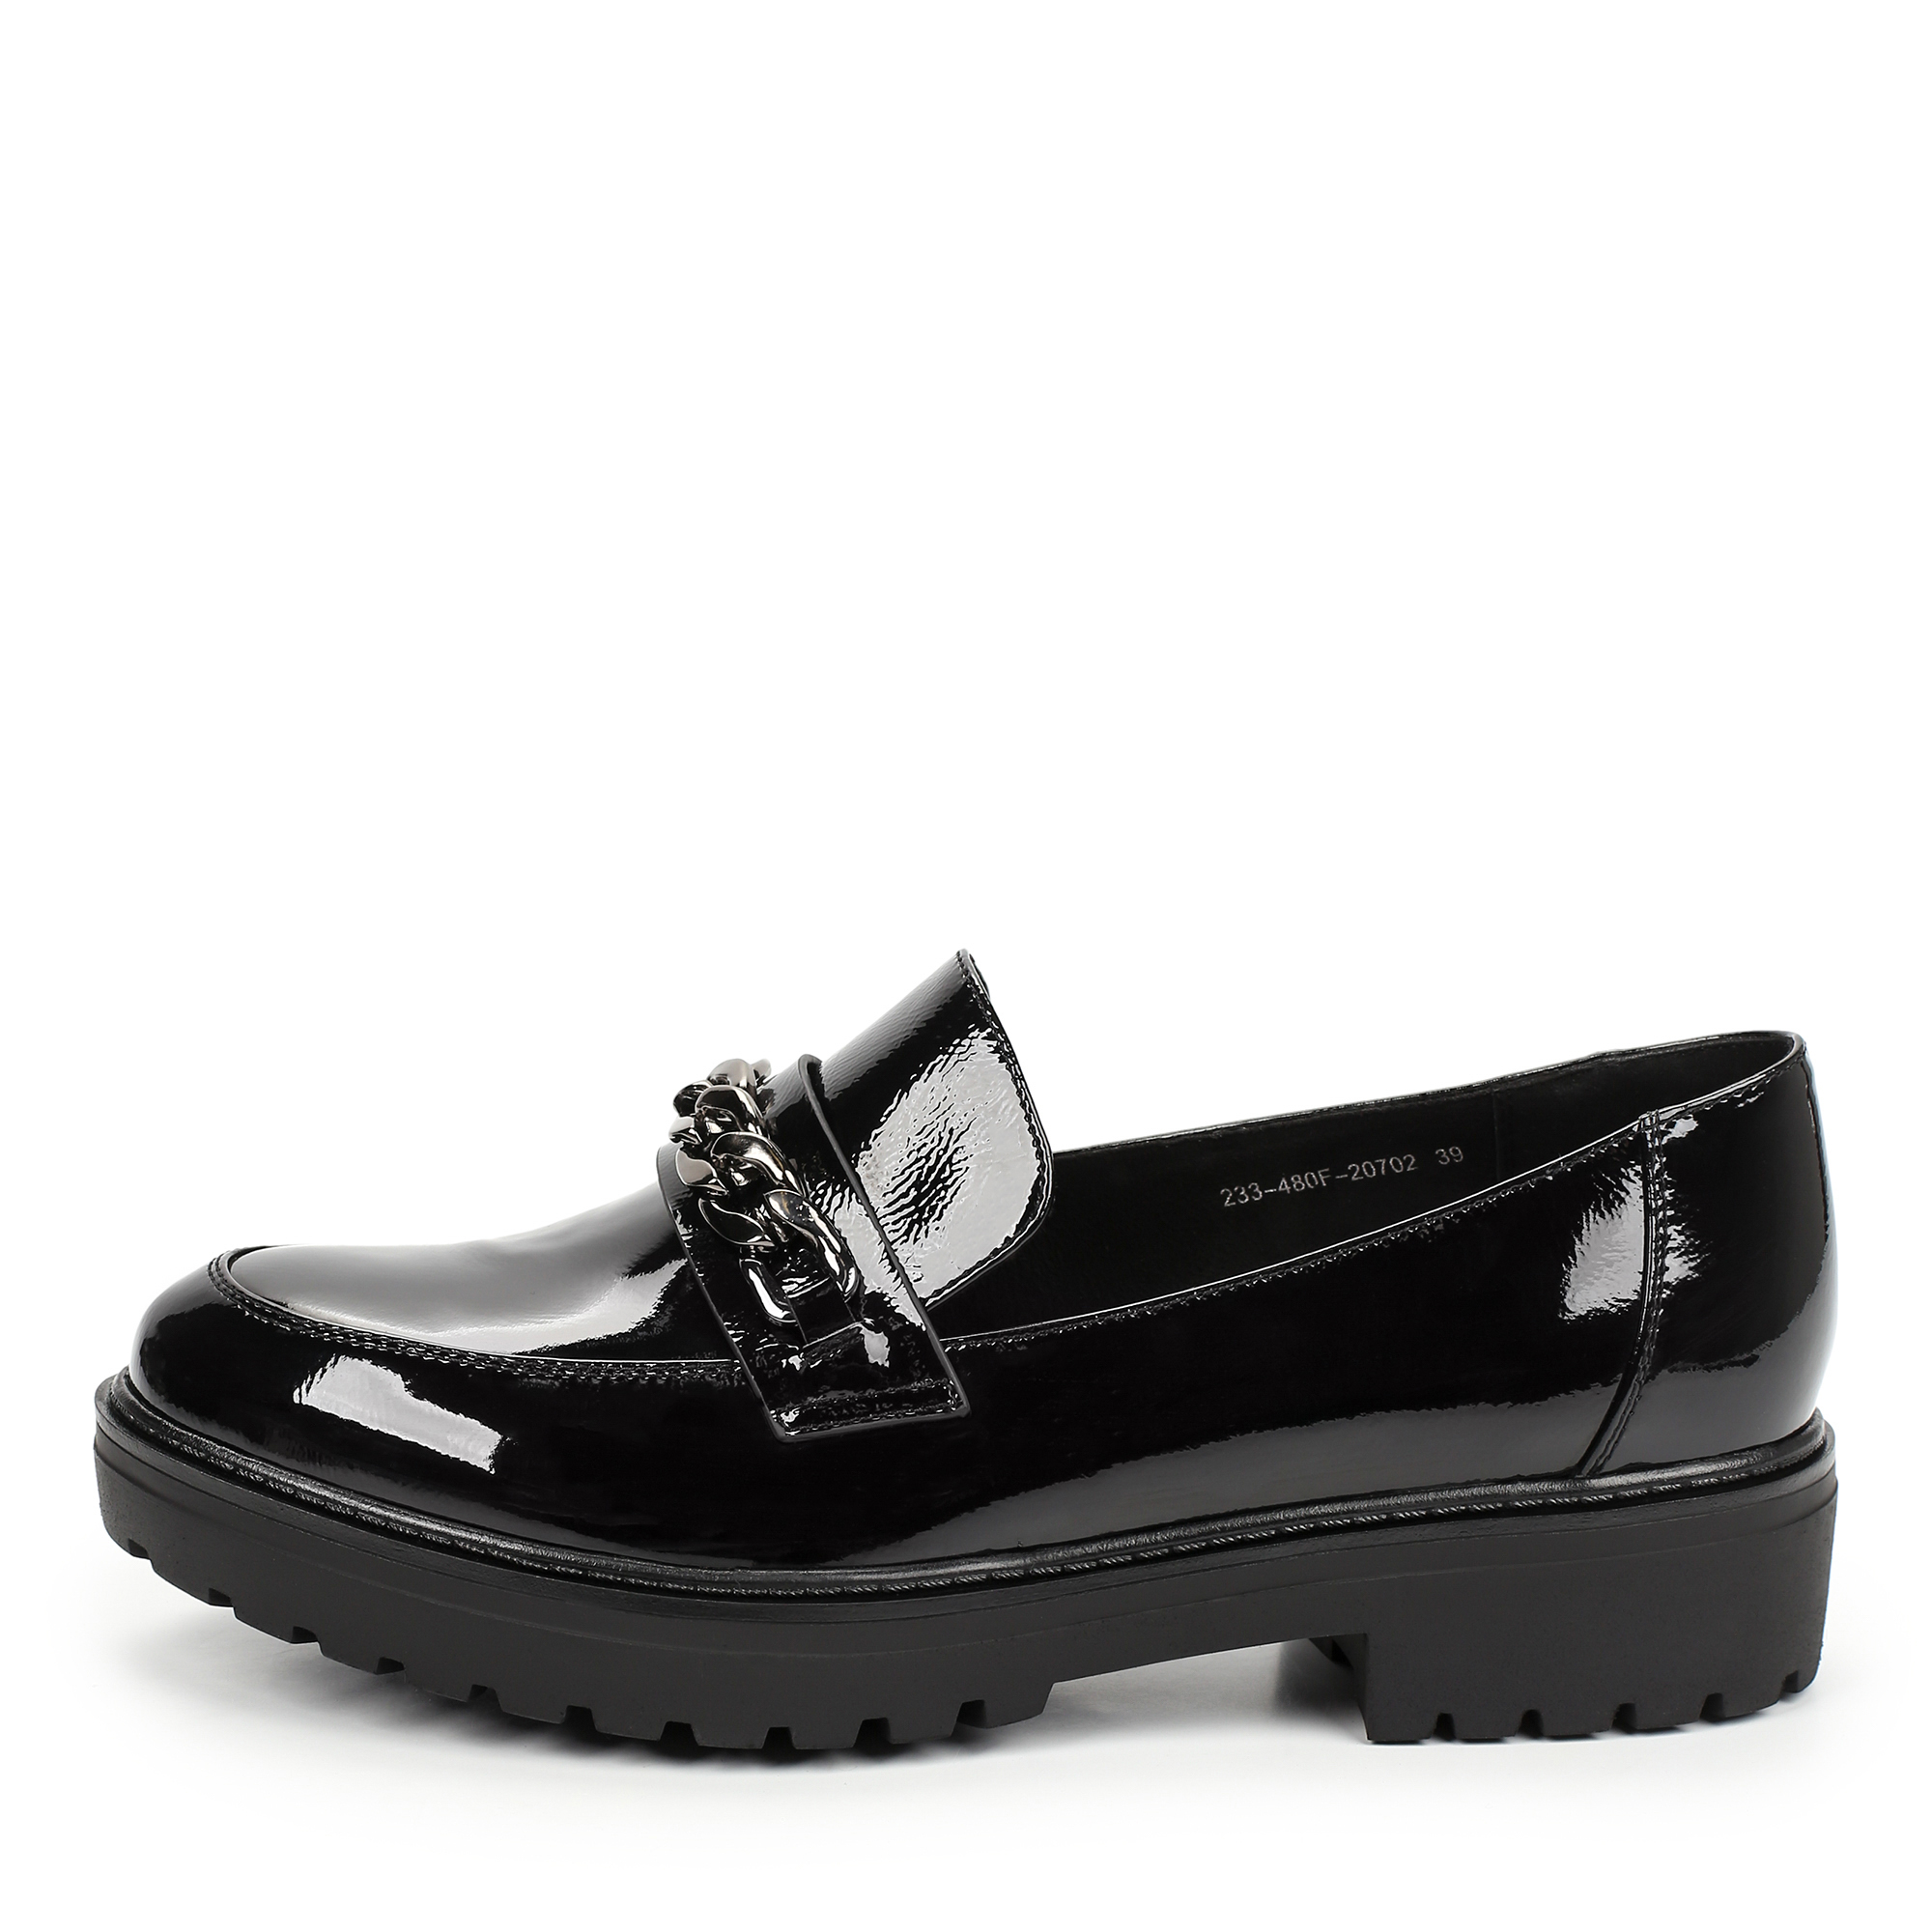 Туфли Thomas Munz 233-480F-20702, цвет черный, размер 37 - фото 1